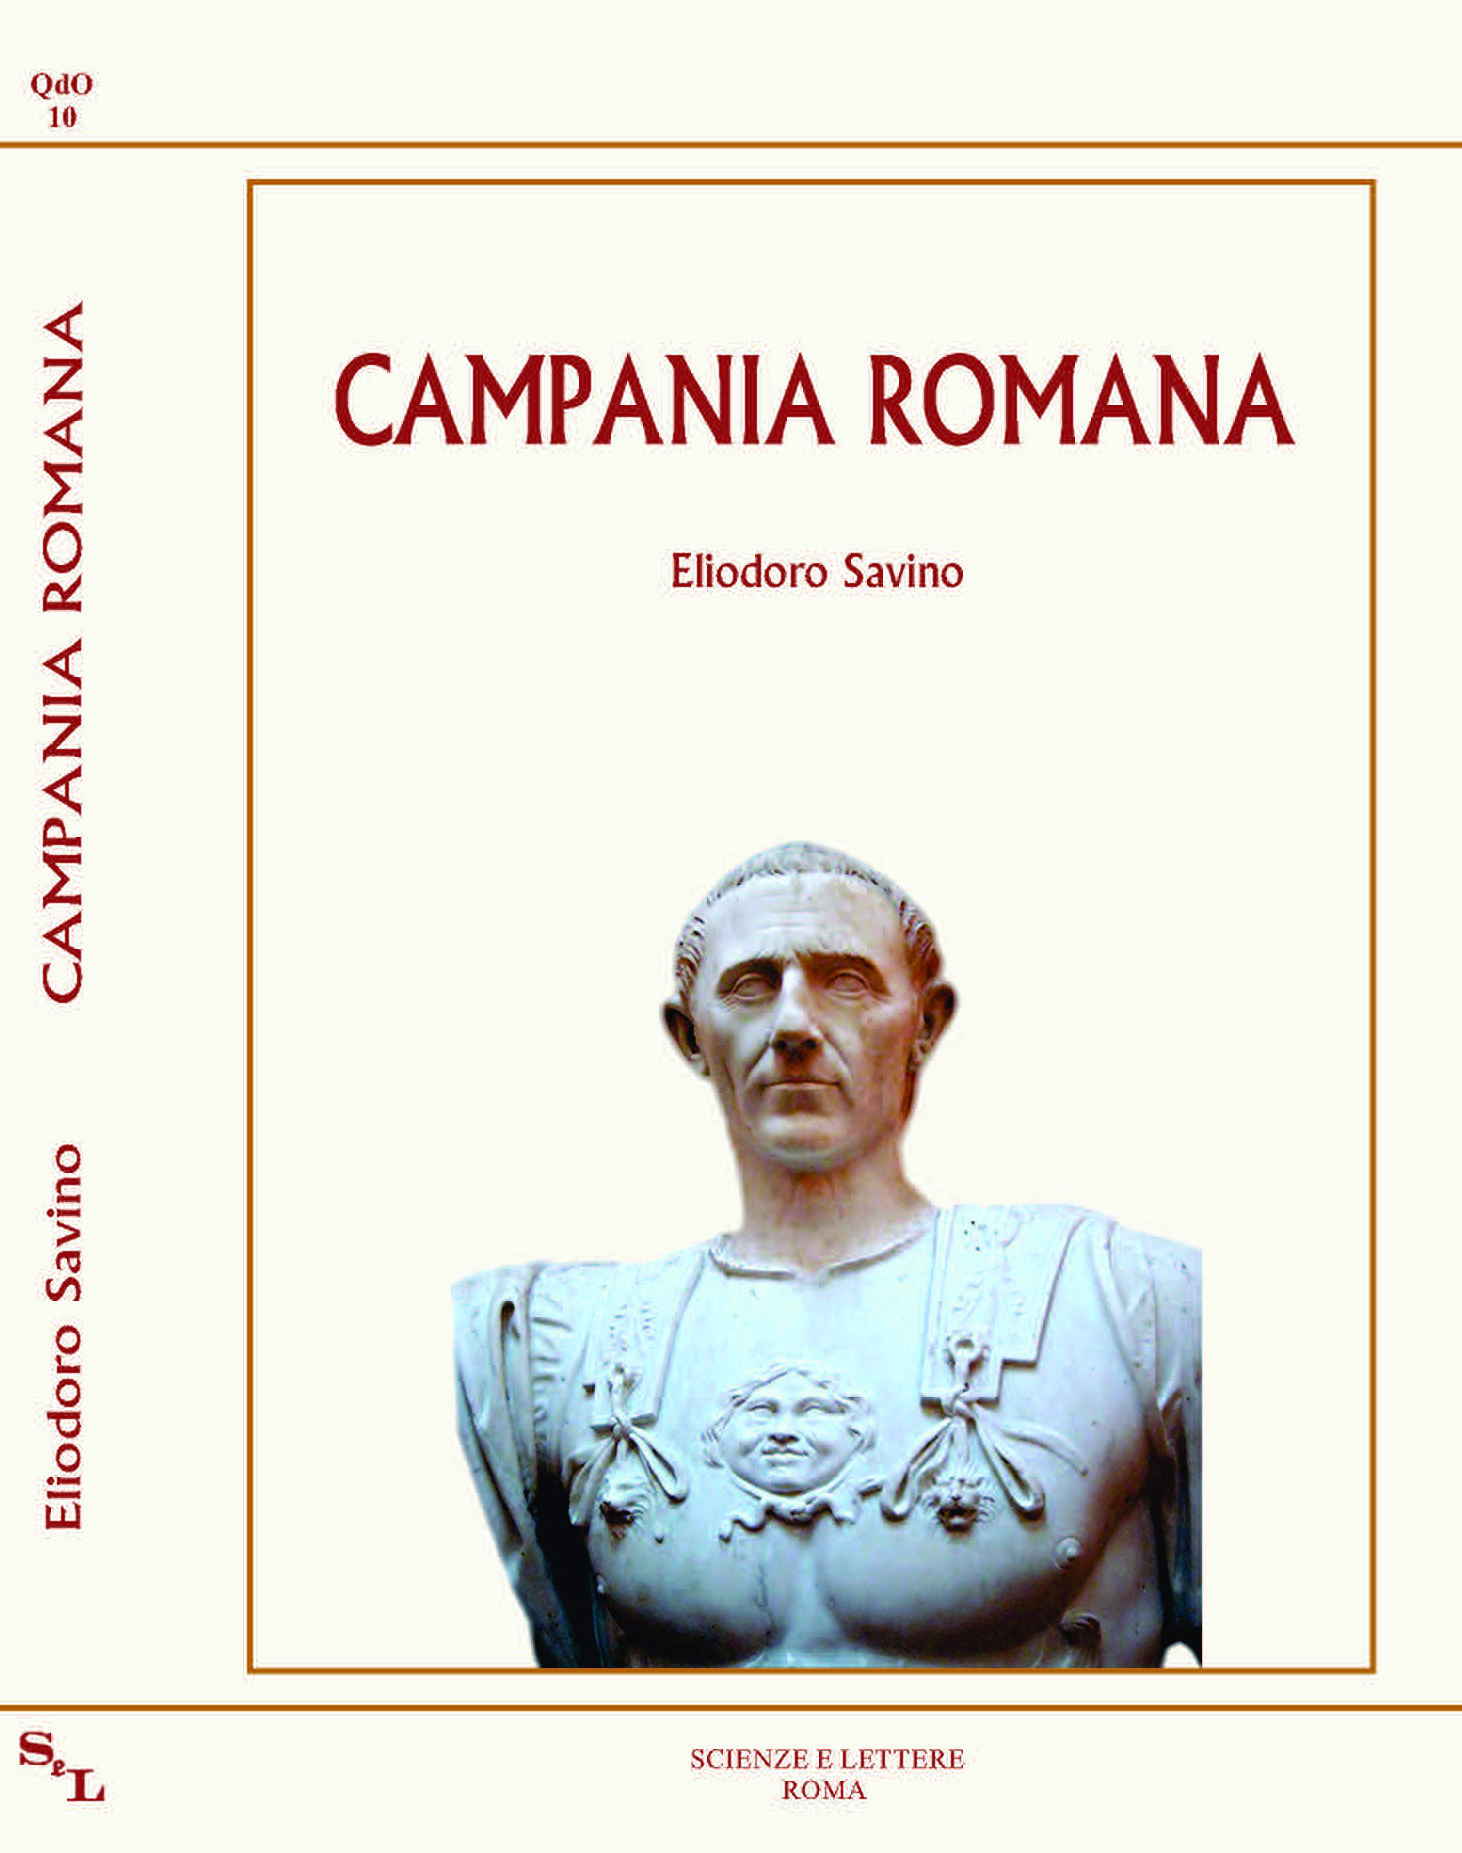 Campania romana - I Quaderni di OEBALUS - 10
